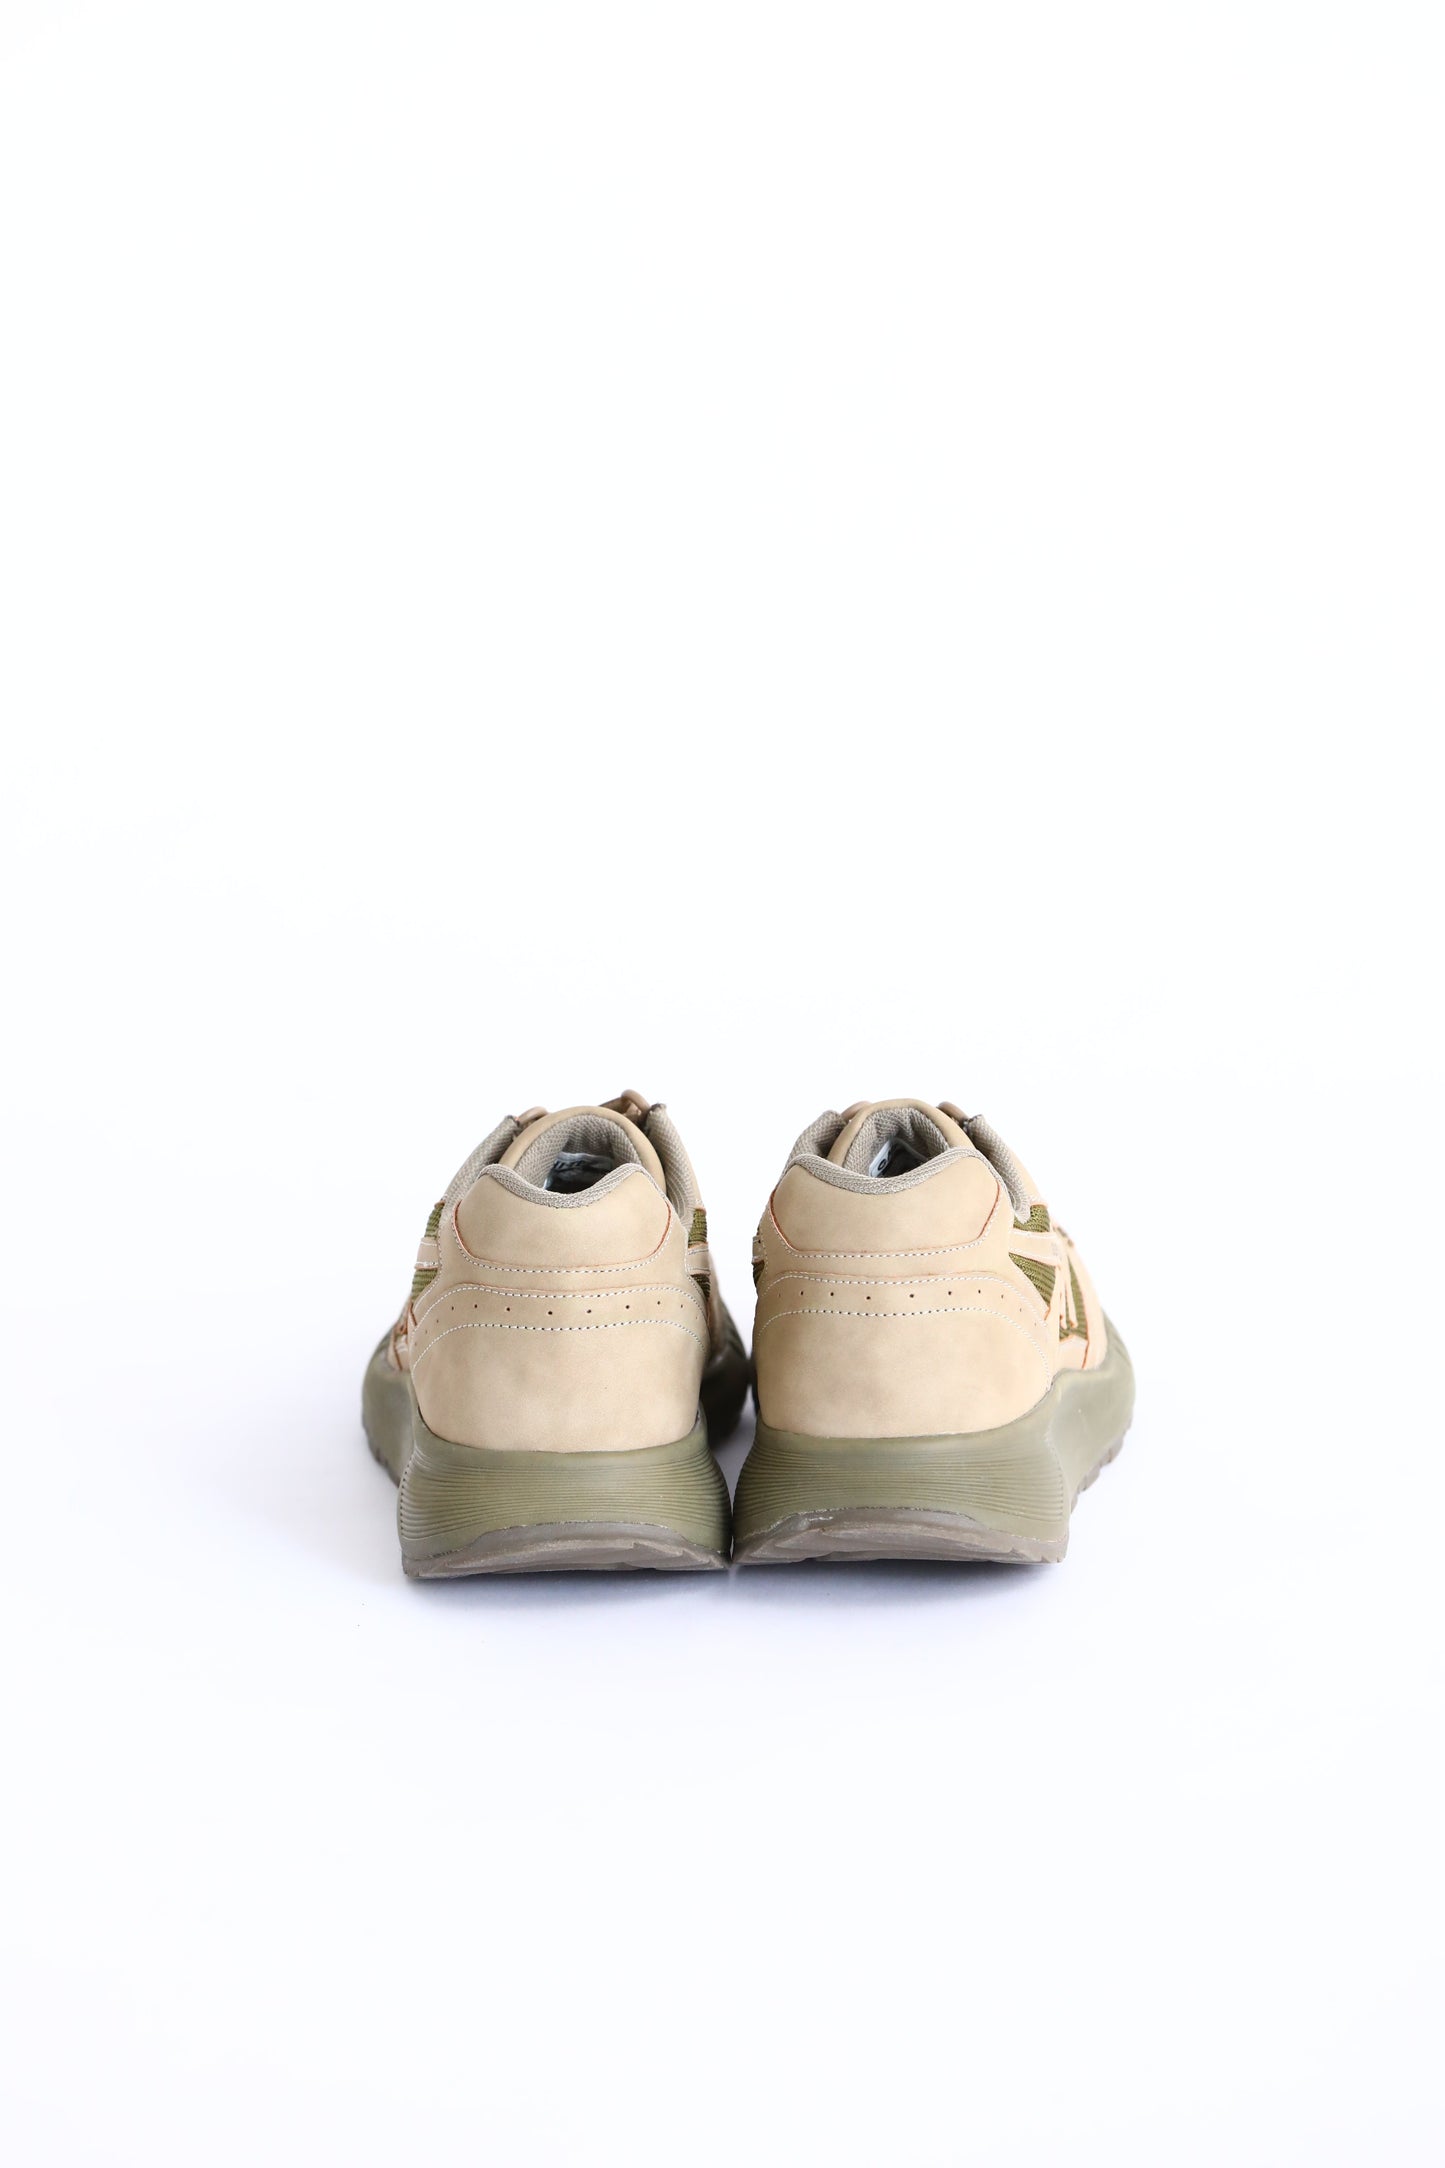 J&S FRANKLIN EQUIPMENT × HI-TEC Military Training Shoes "SILVER SHADOW”